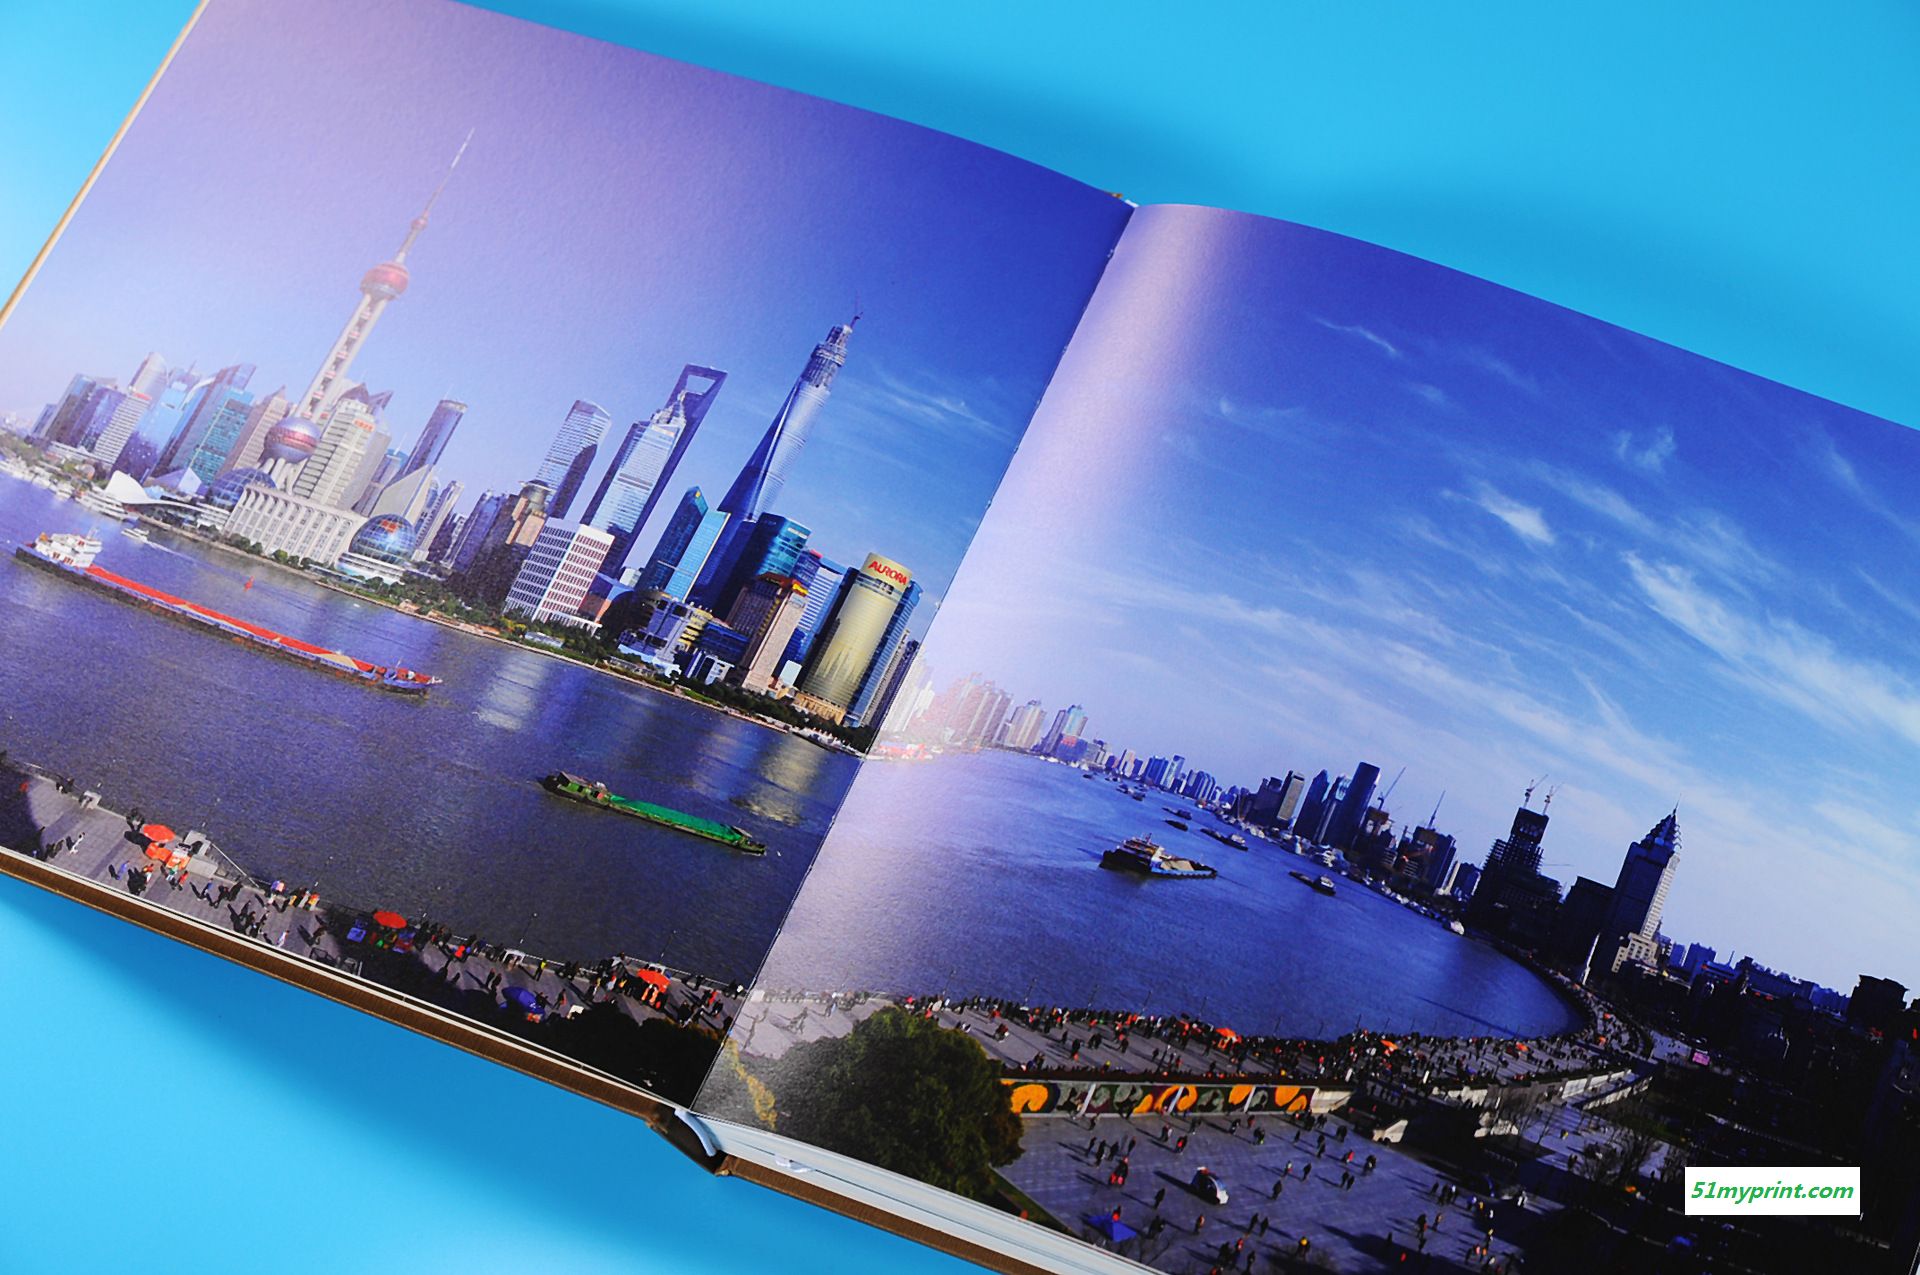 企业画册 企业宣传册印刷 设计制作 上海印刷